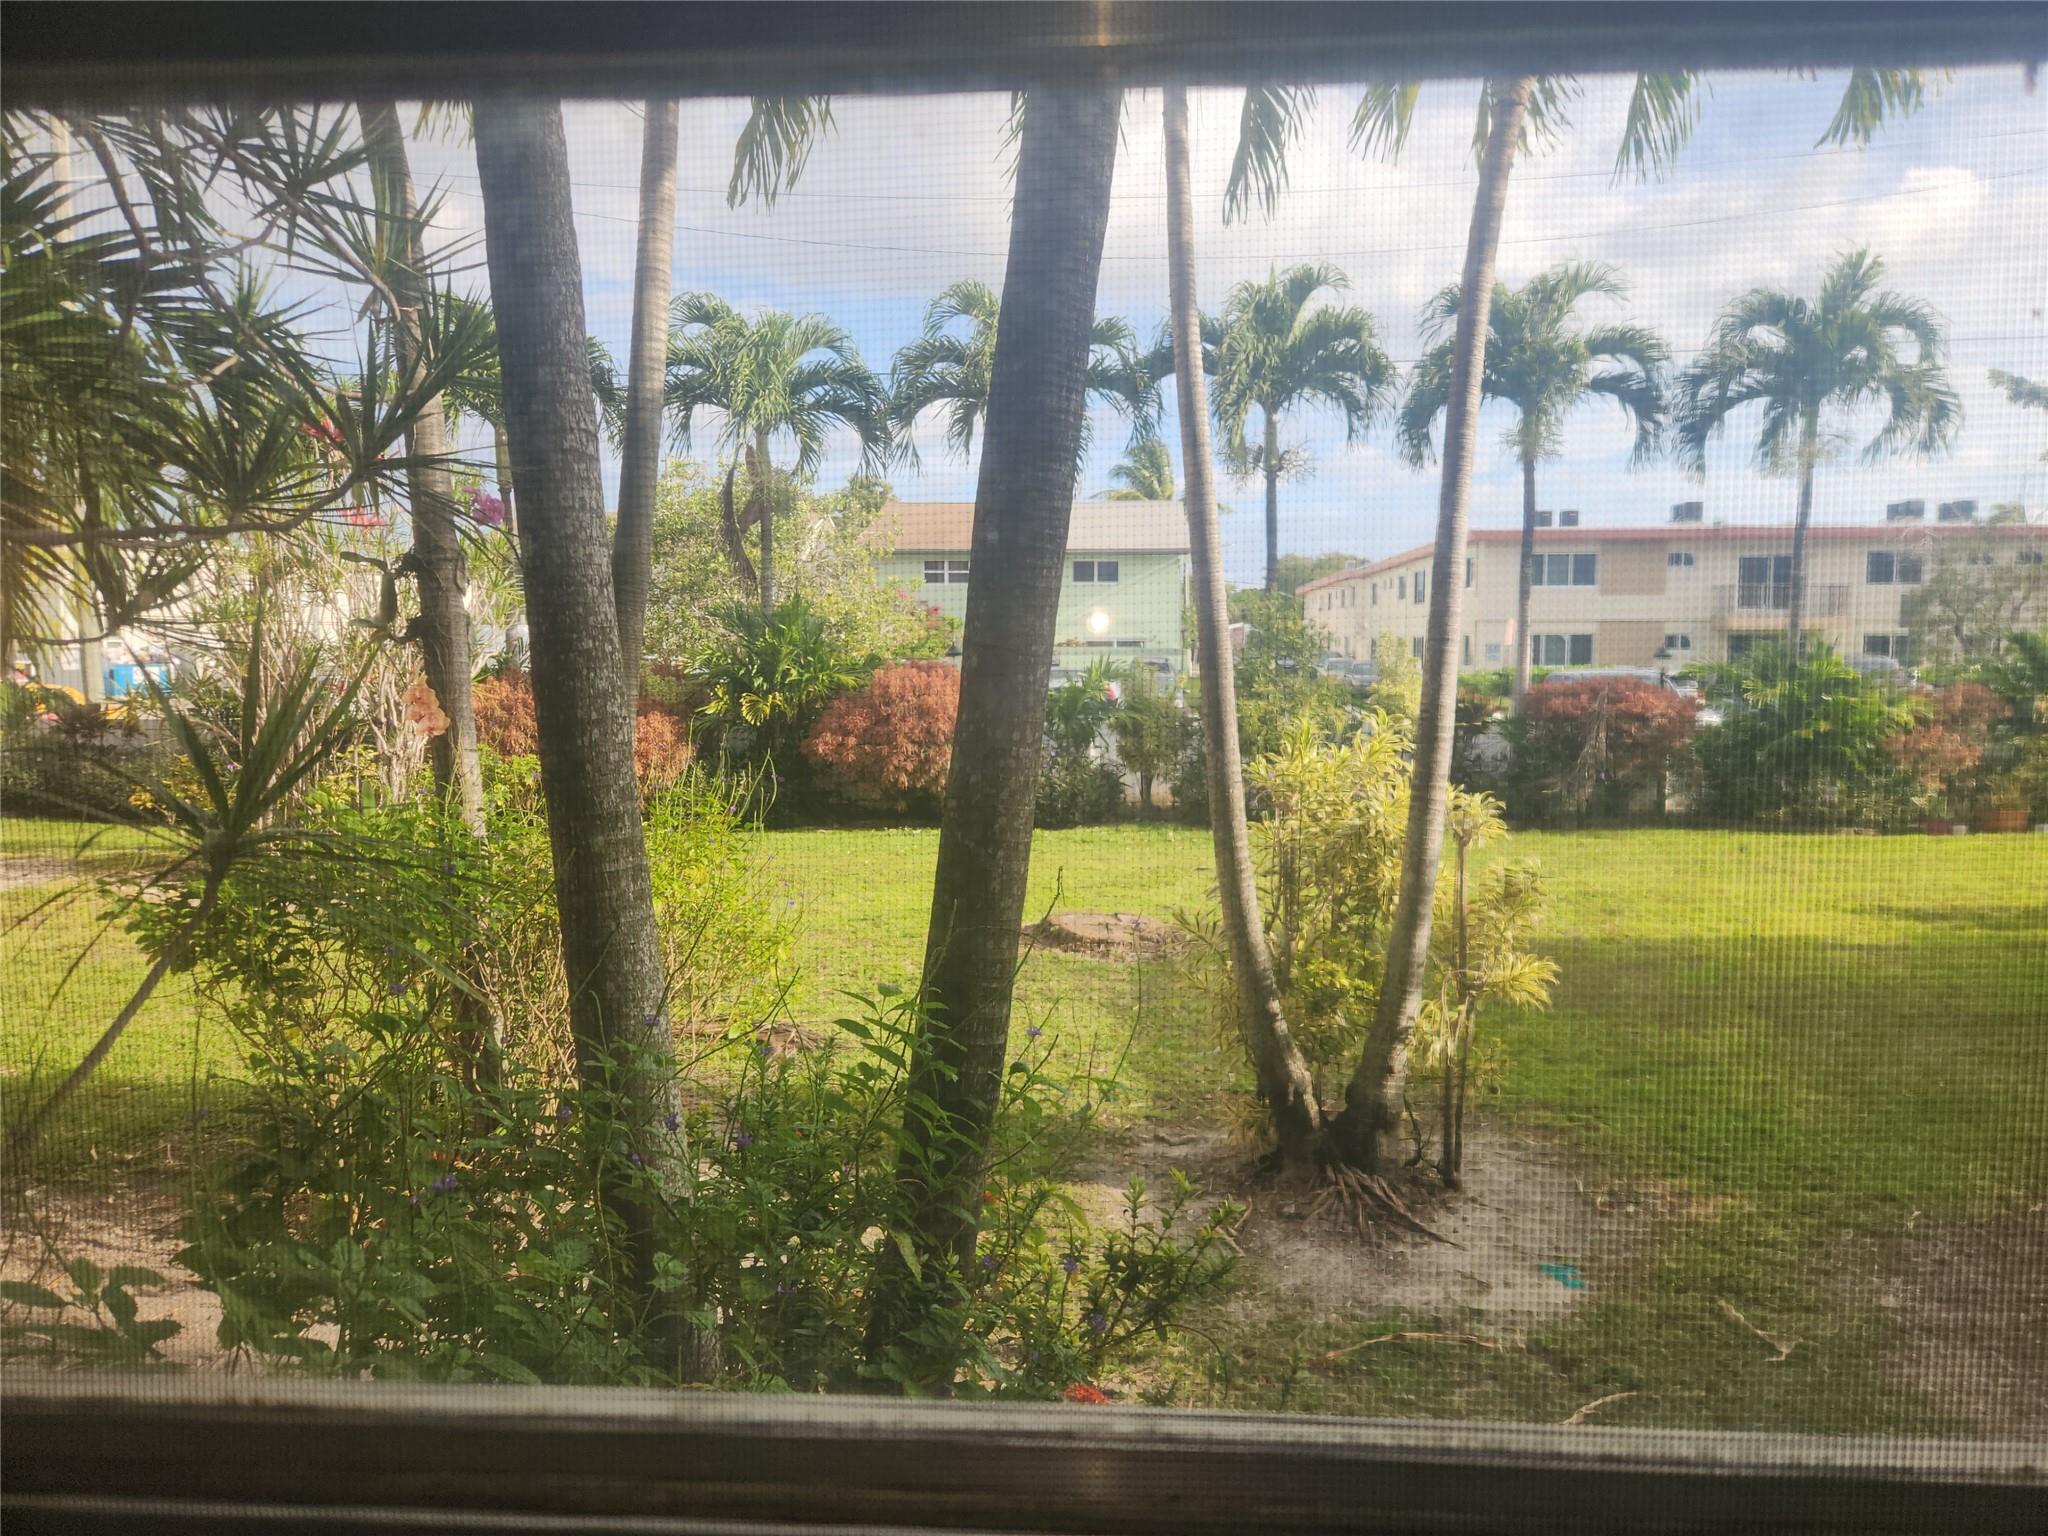 View North Miami Beach, FL 33162 condo